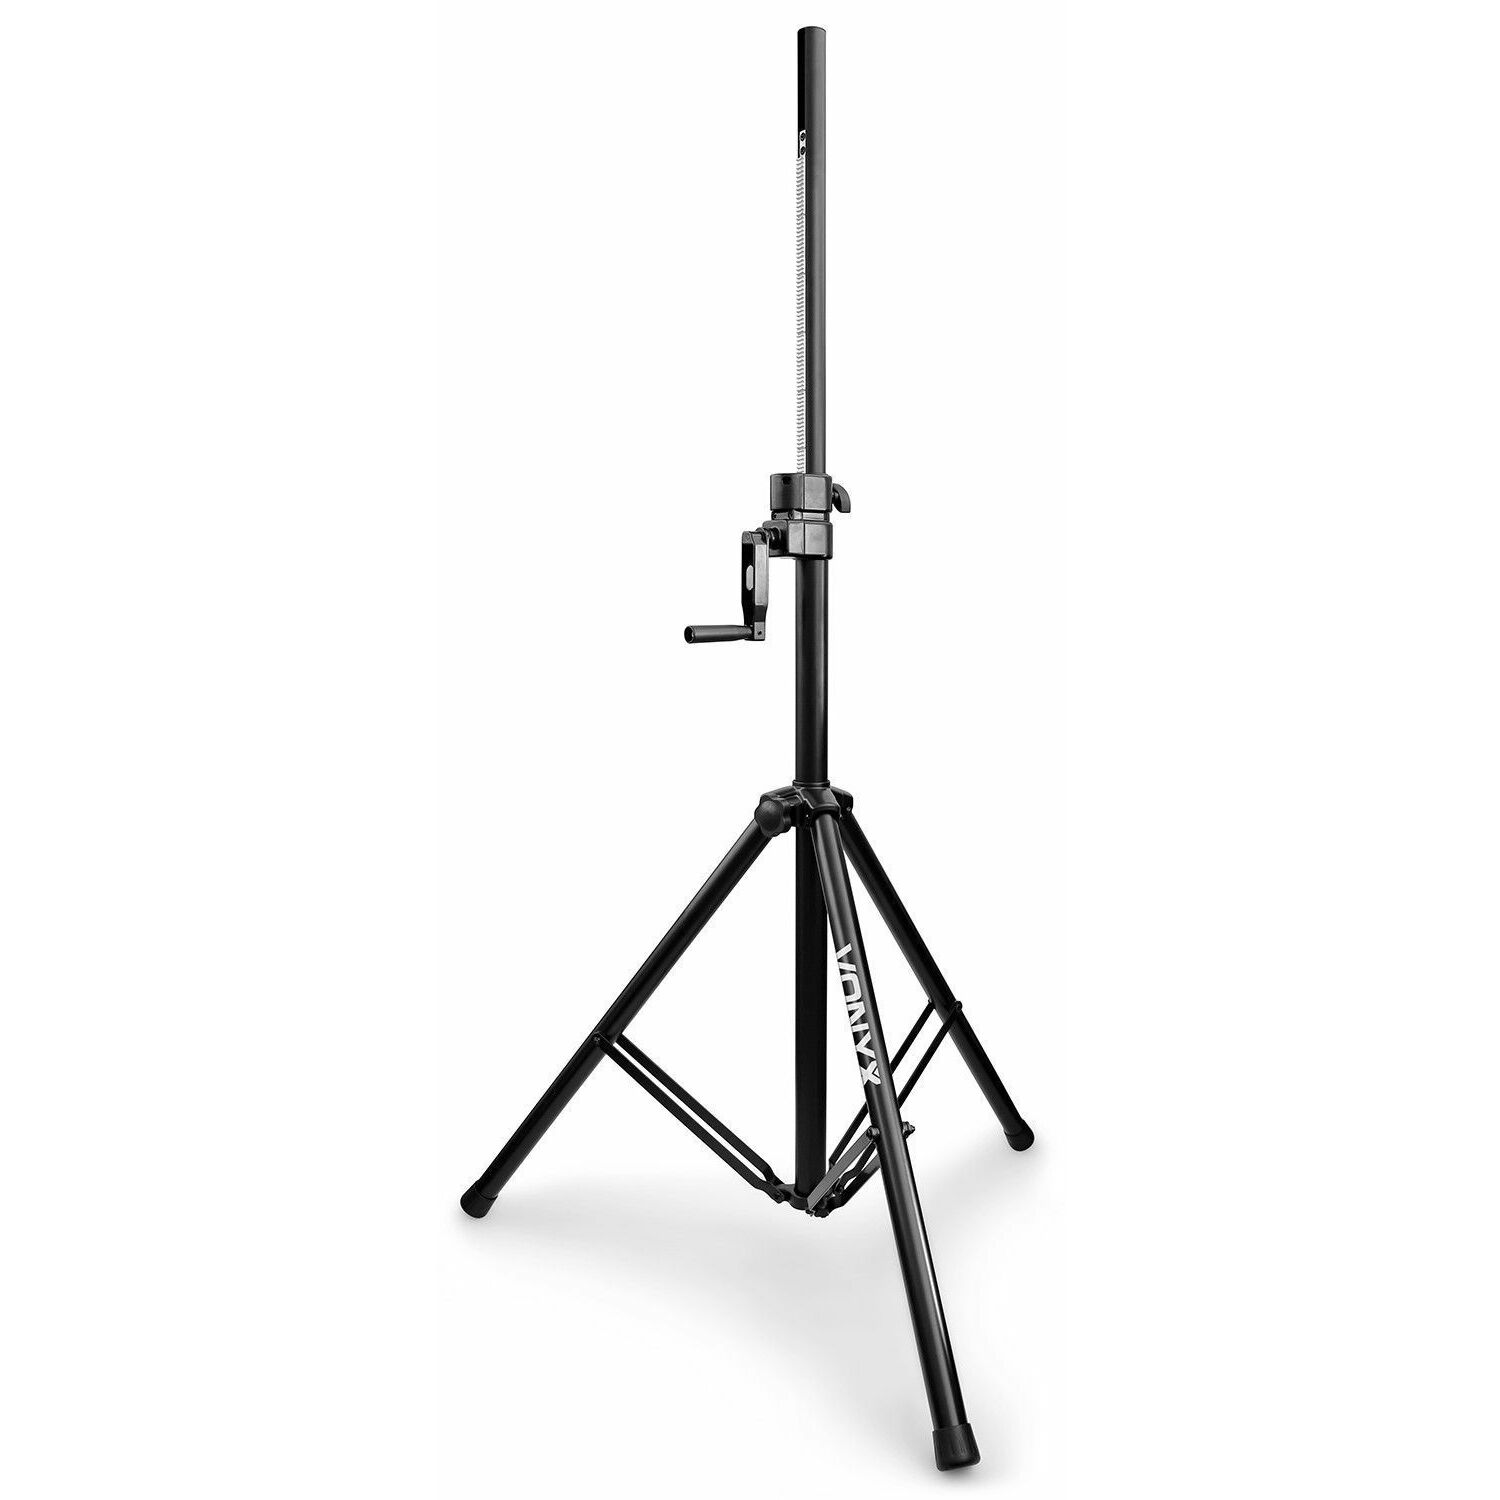 Retourdeal - Vonyx LS93 wind up speakerstandaard tot 220cm hoog - 70kg